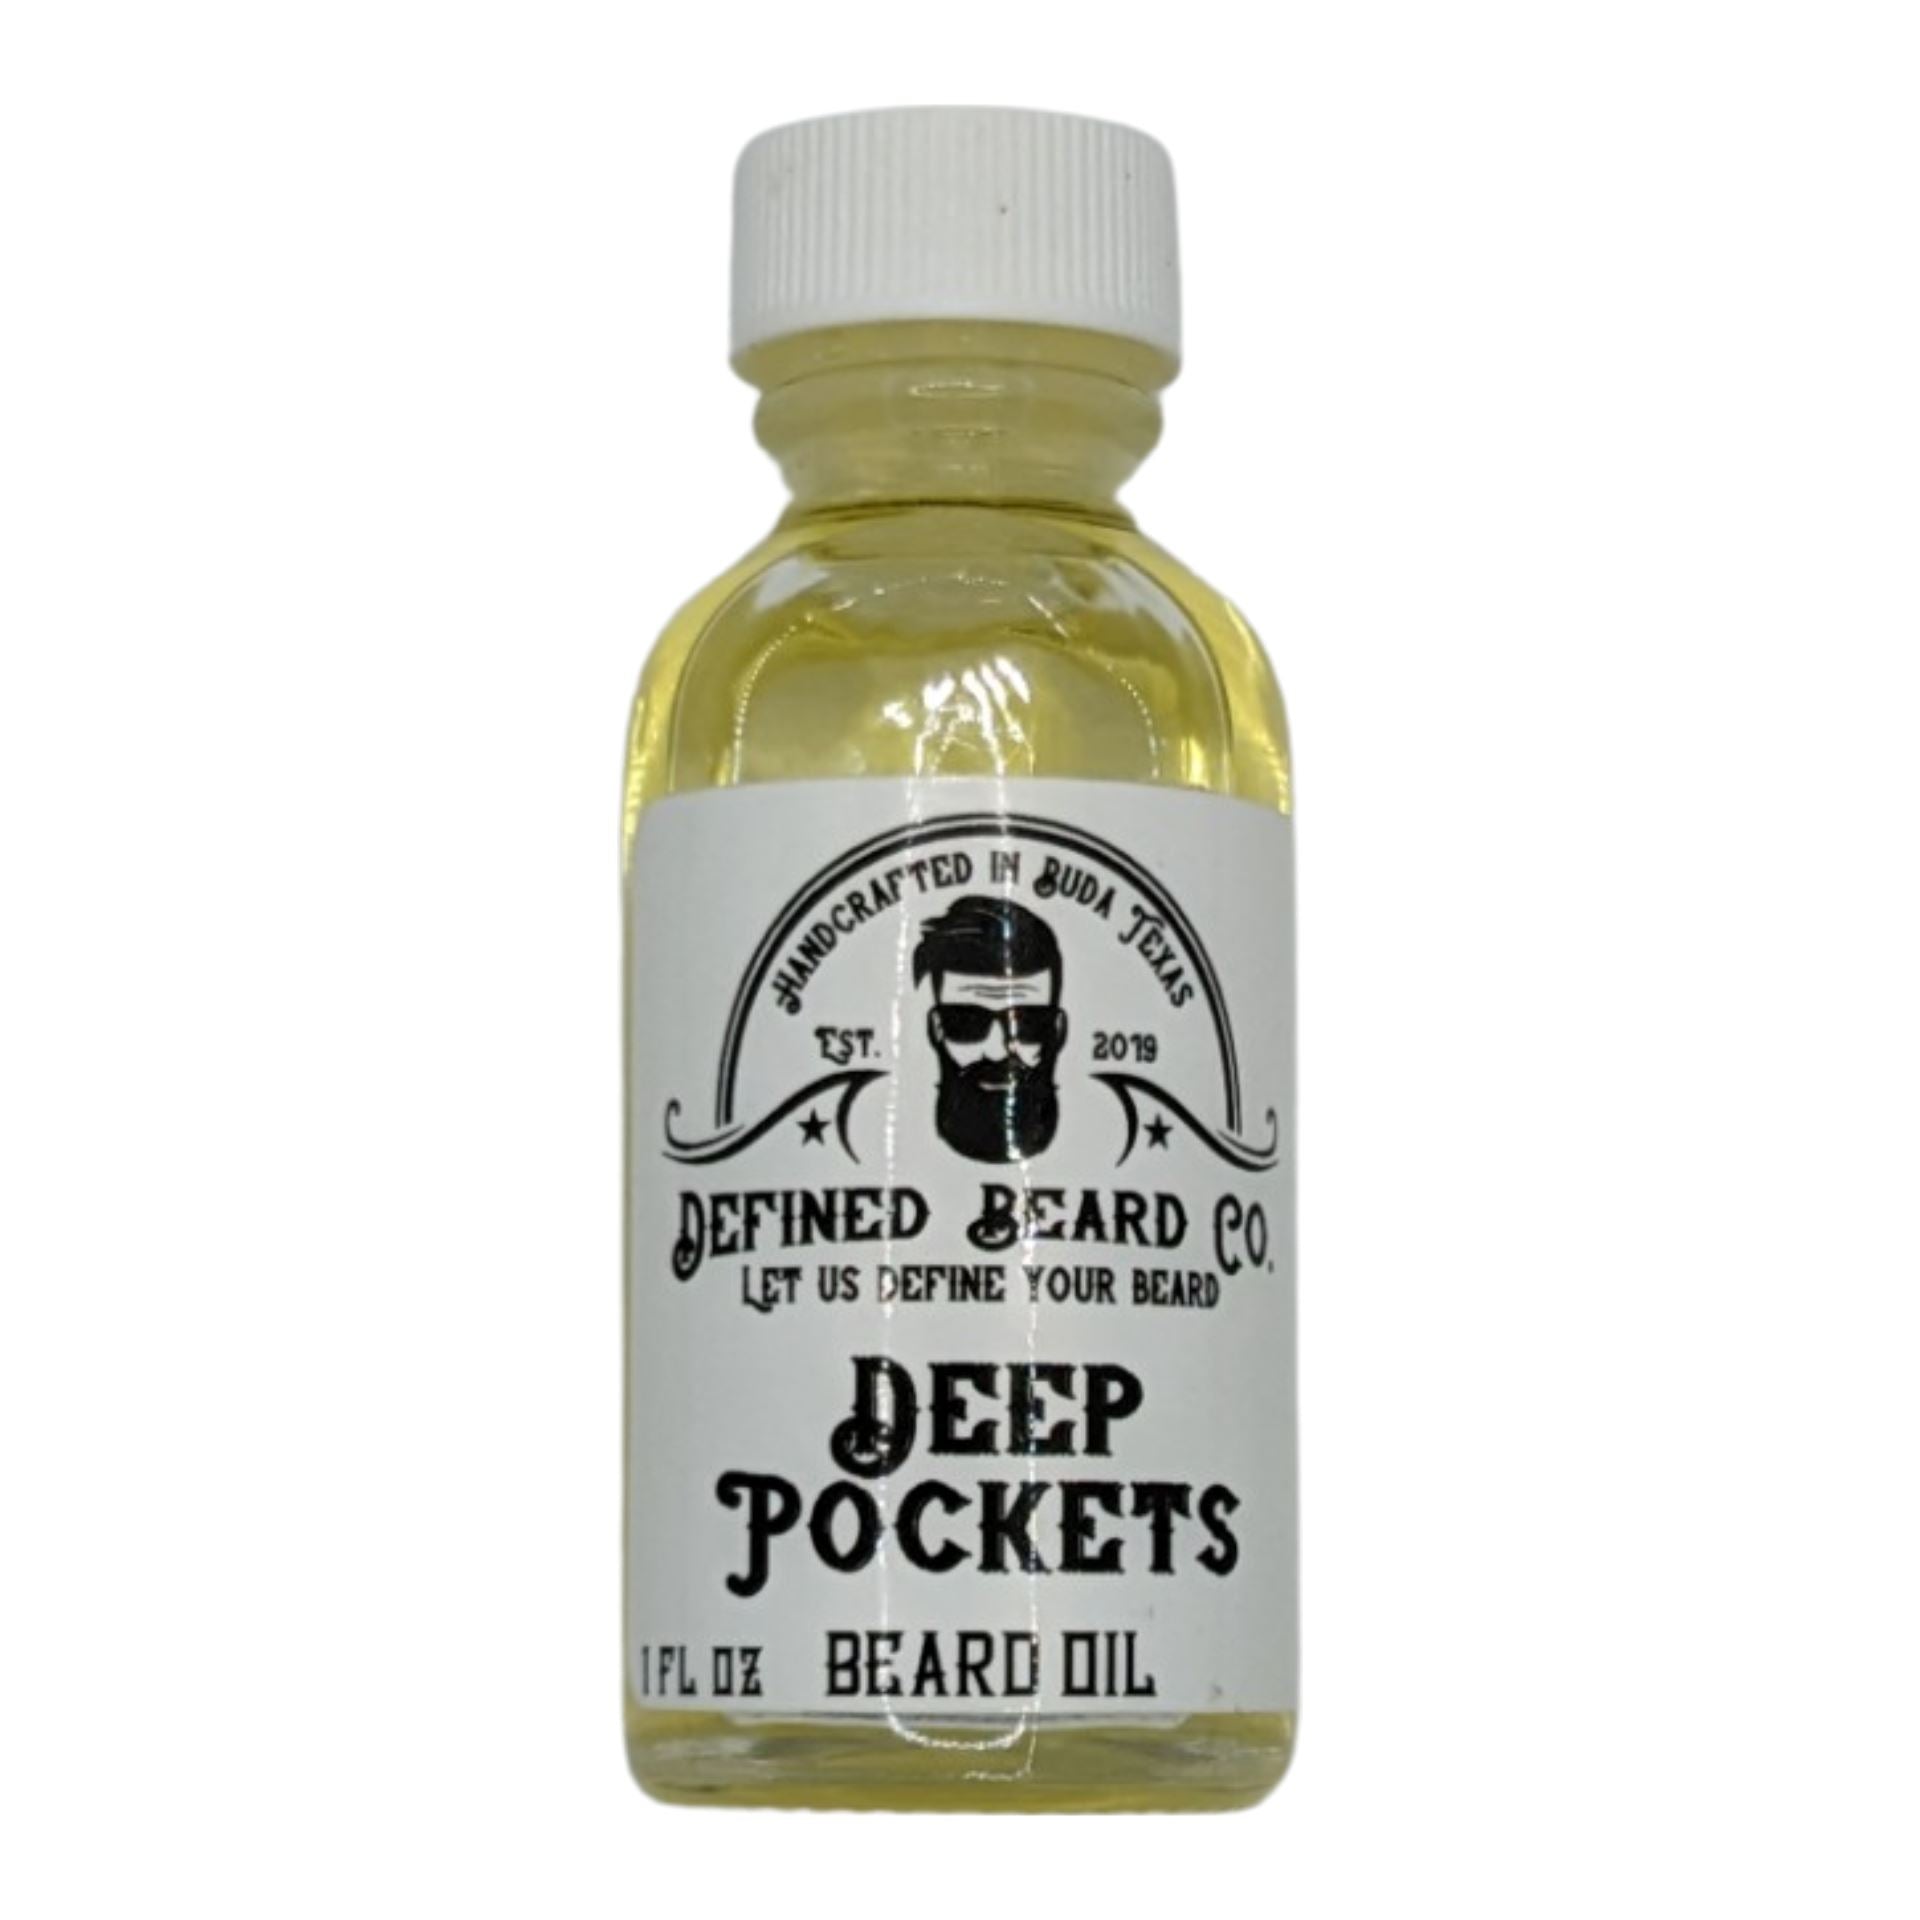 Deep Pockets Beard Oil - by Defined Beard Co. (Pre-Owned)